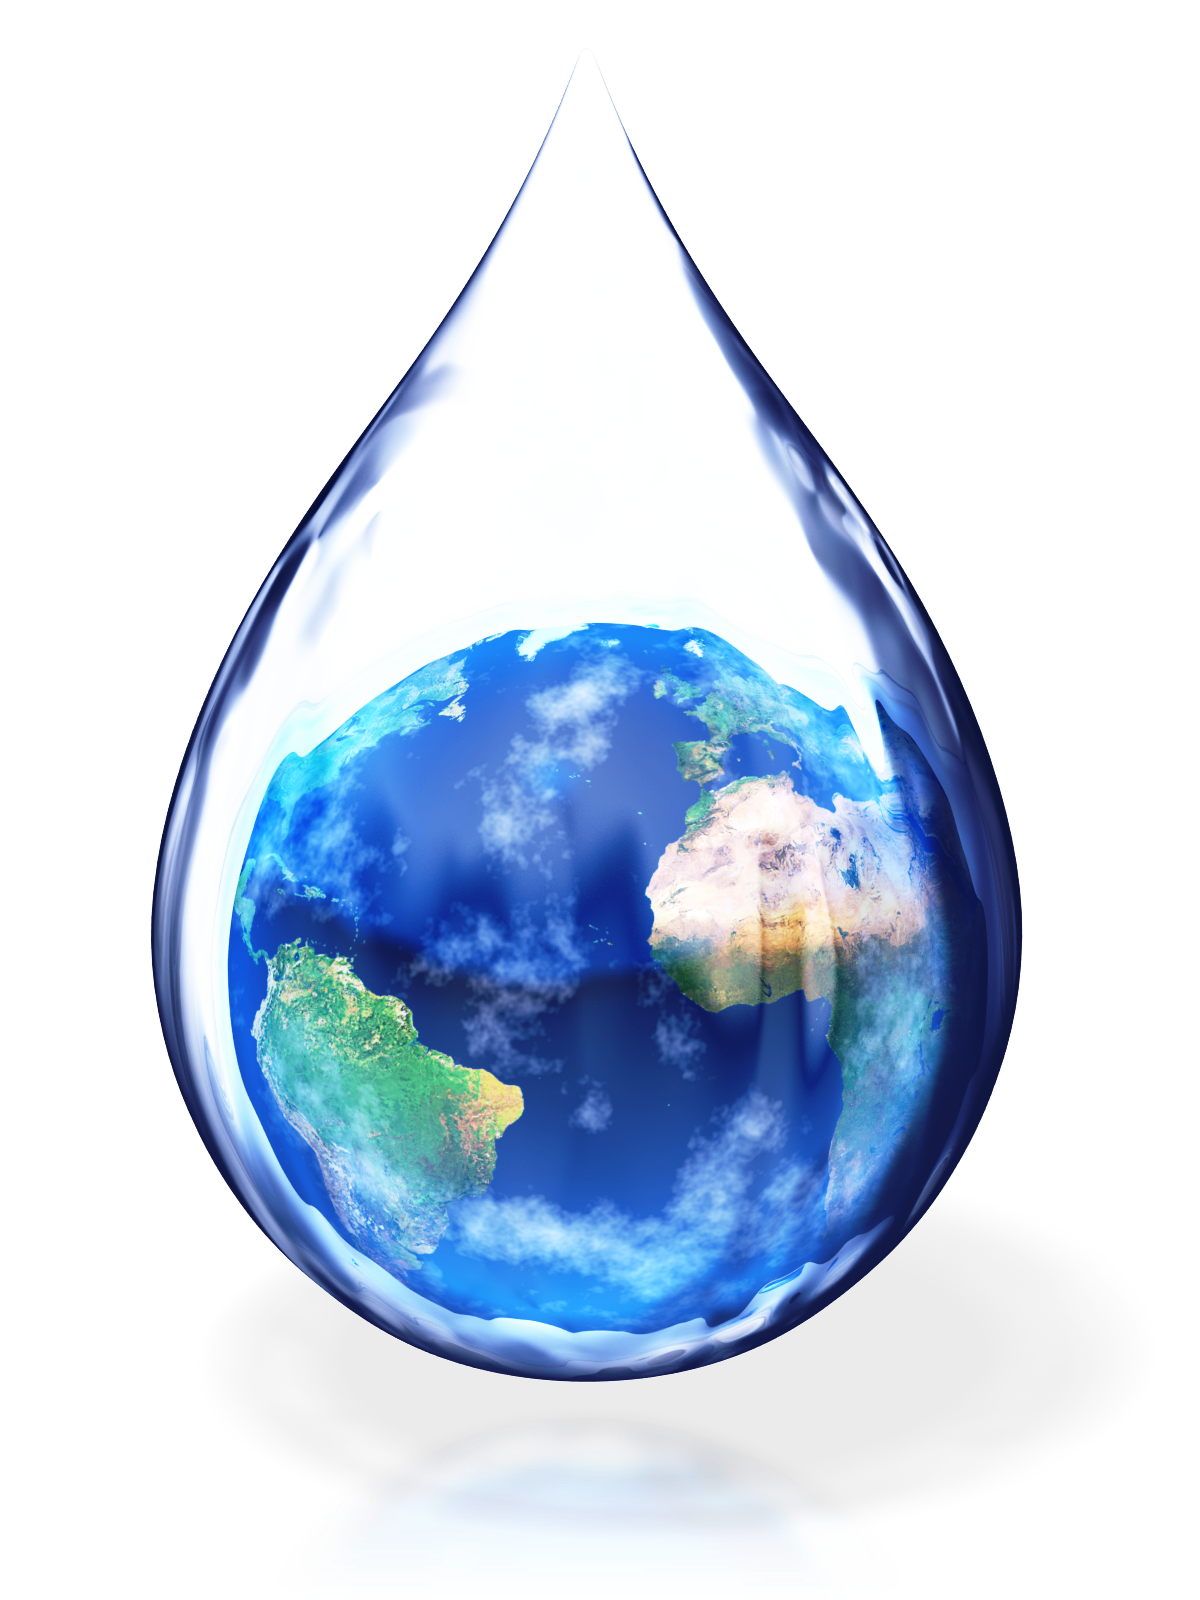 Сохранить воду прозрачную